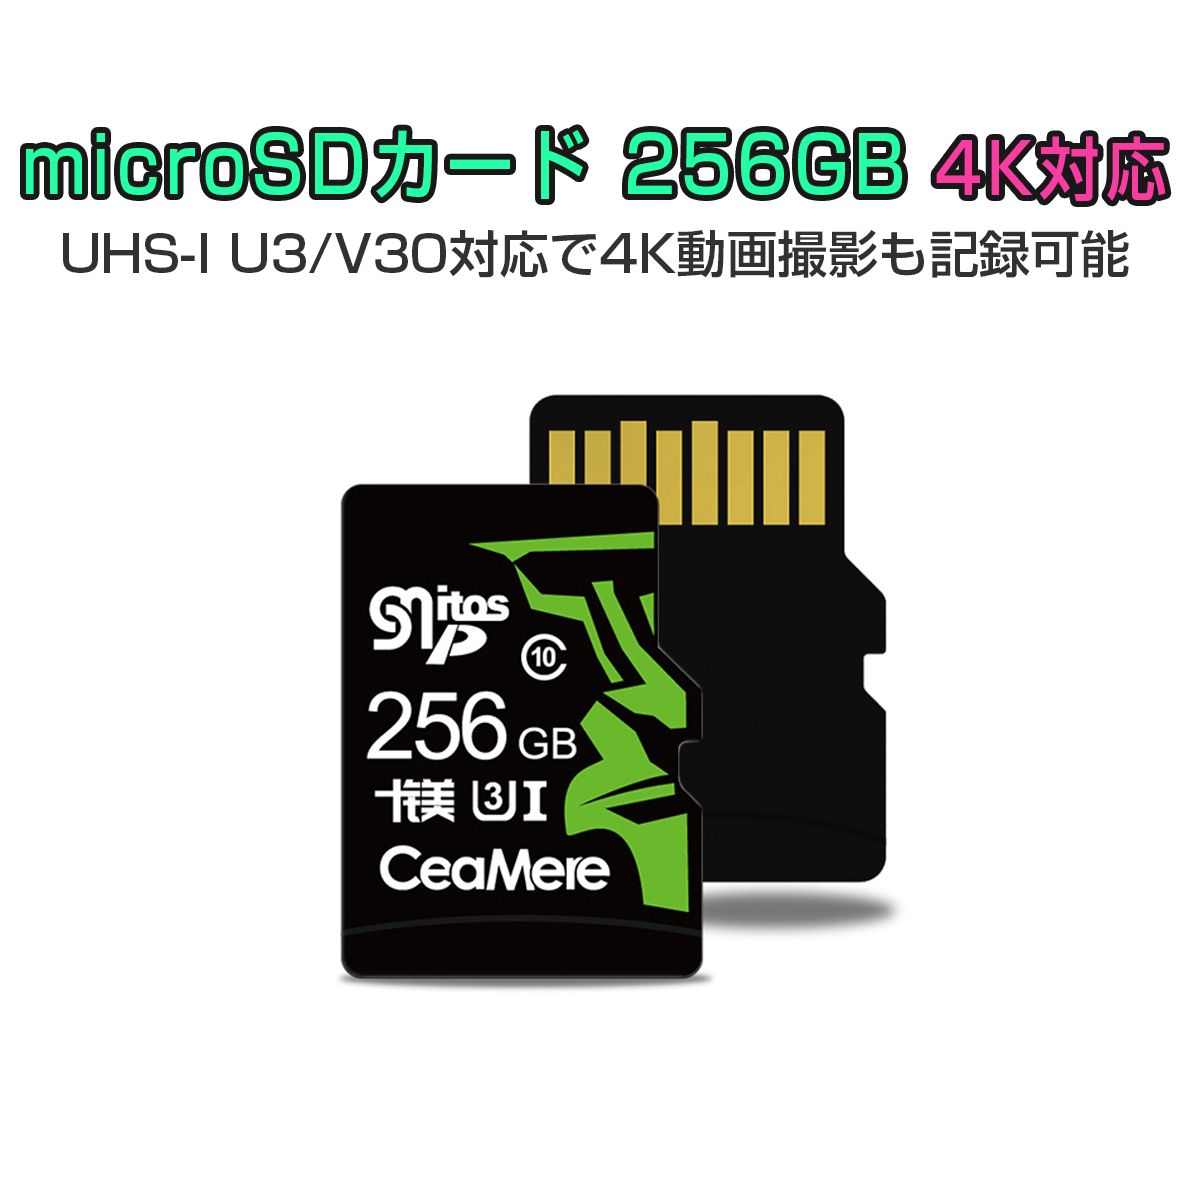 卸売B2B MicroSDカード 256GB UHS-I V30 超高速 最大95MB/sec 3D MLC NAND採用 ASチップ 高耐久 MicroSD マイクロSD microSDXC 300x SDカード変換アダプタ USBカードリーダー付き 1年保証 K&M